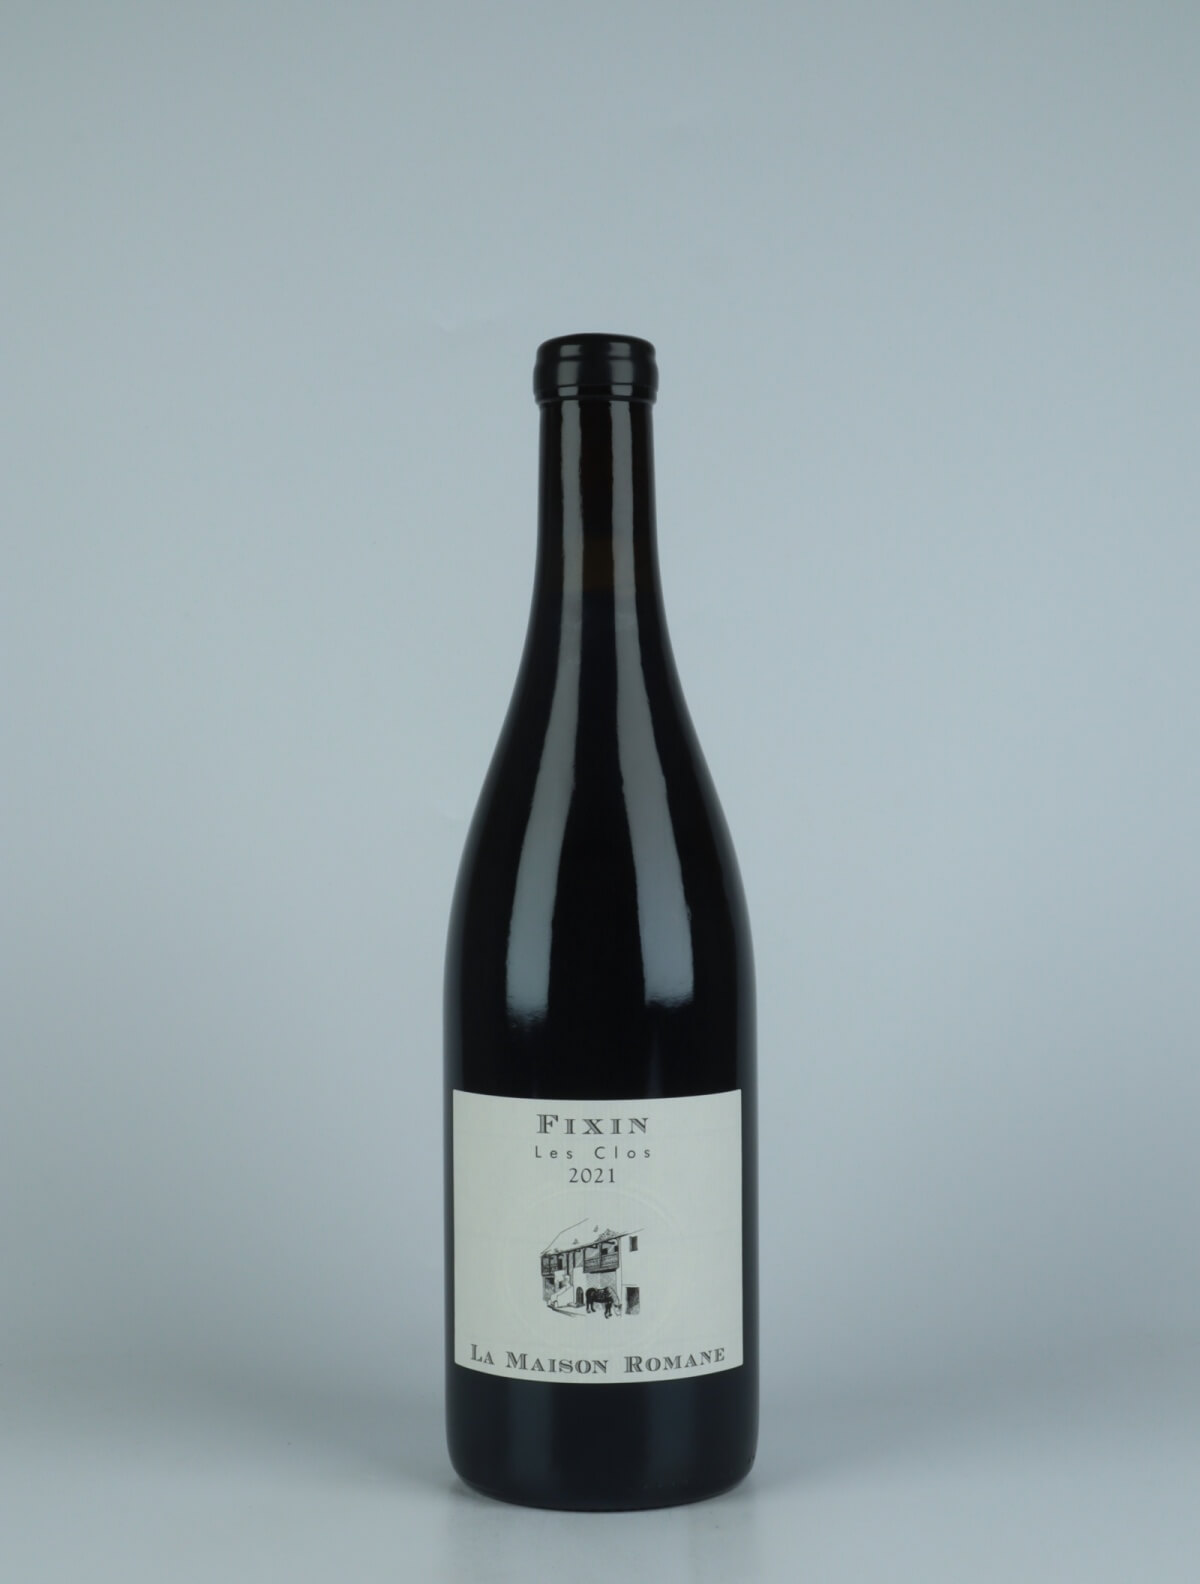 En flaske 2021 Fixin - Les Clos Rødvin fra La Maison Romane, Bourgogne i Frankrig